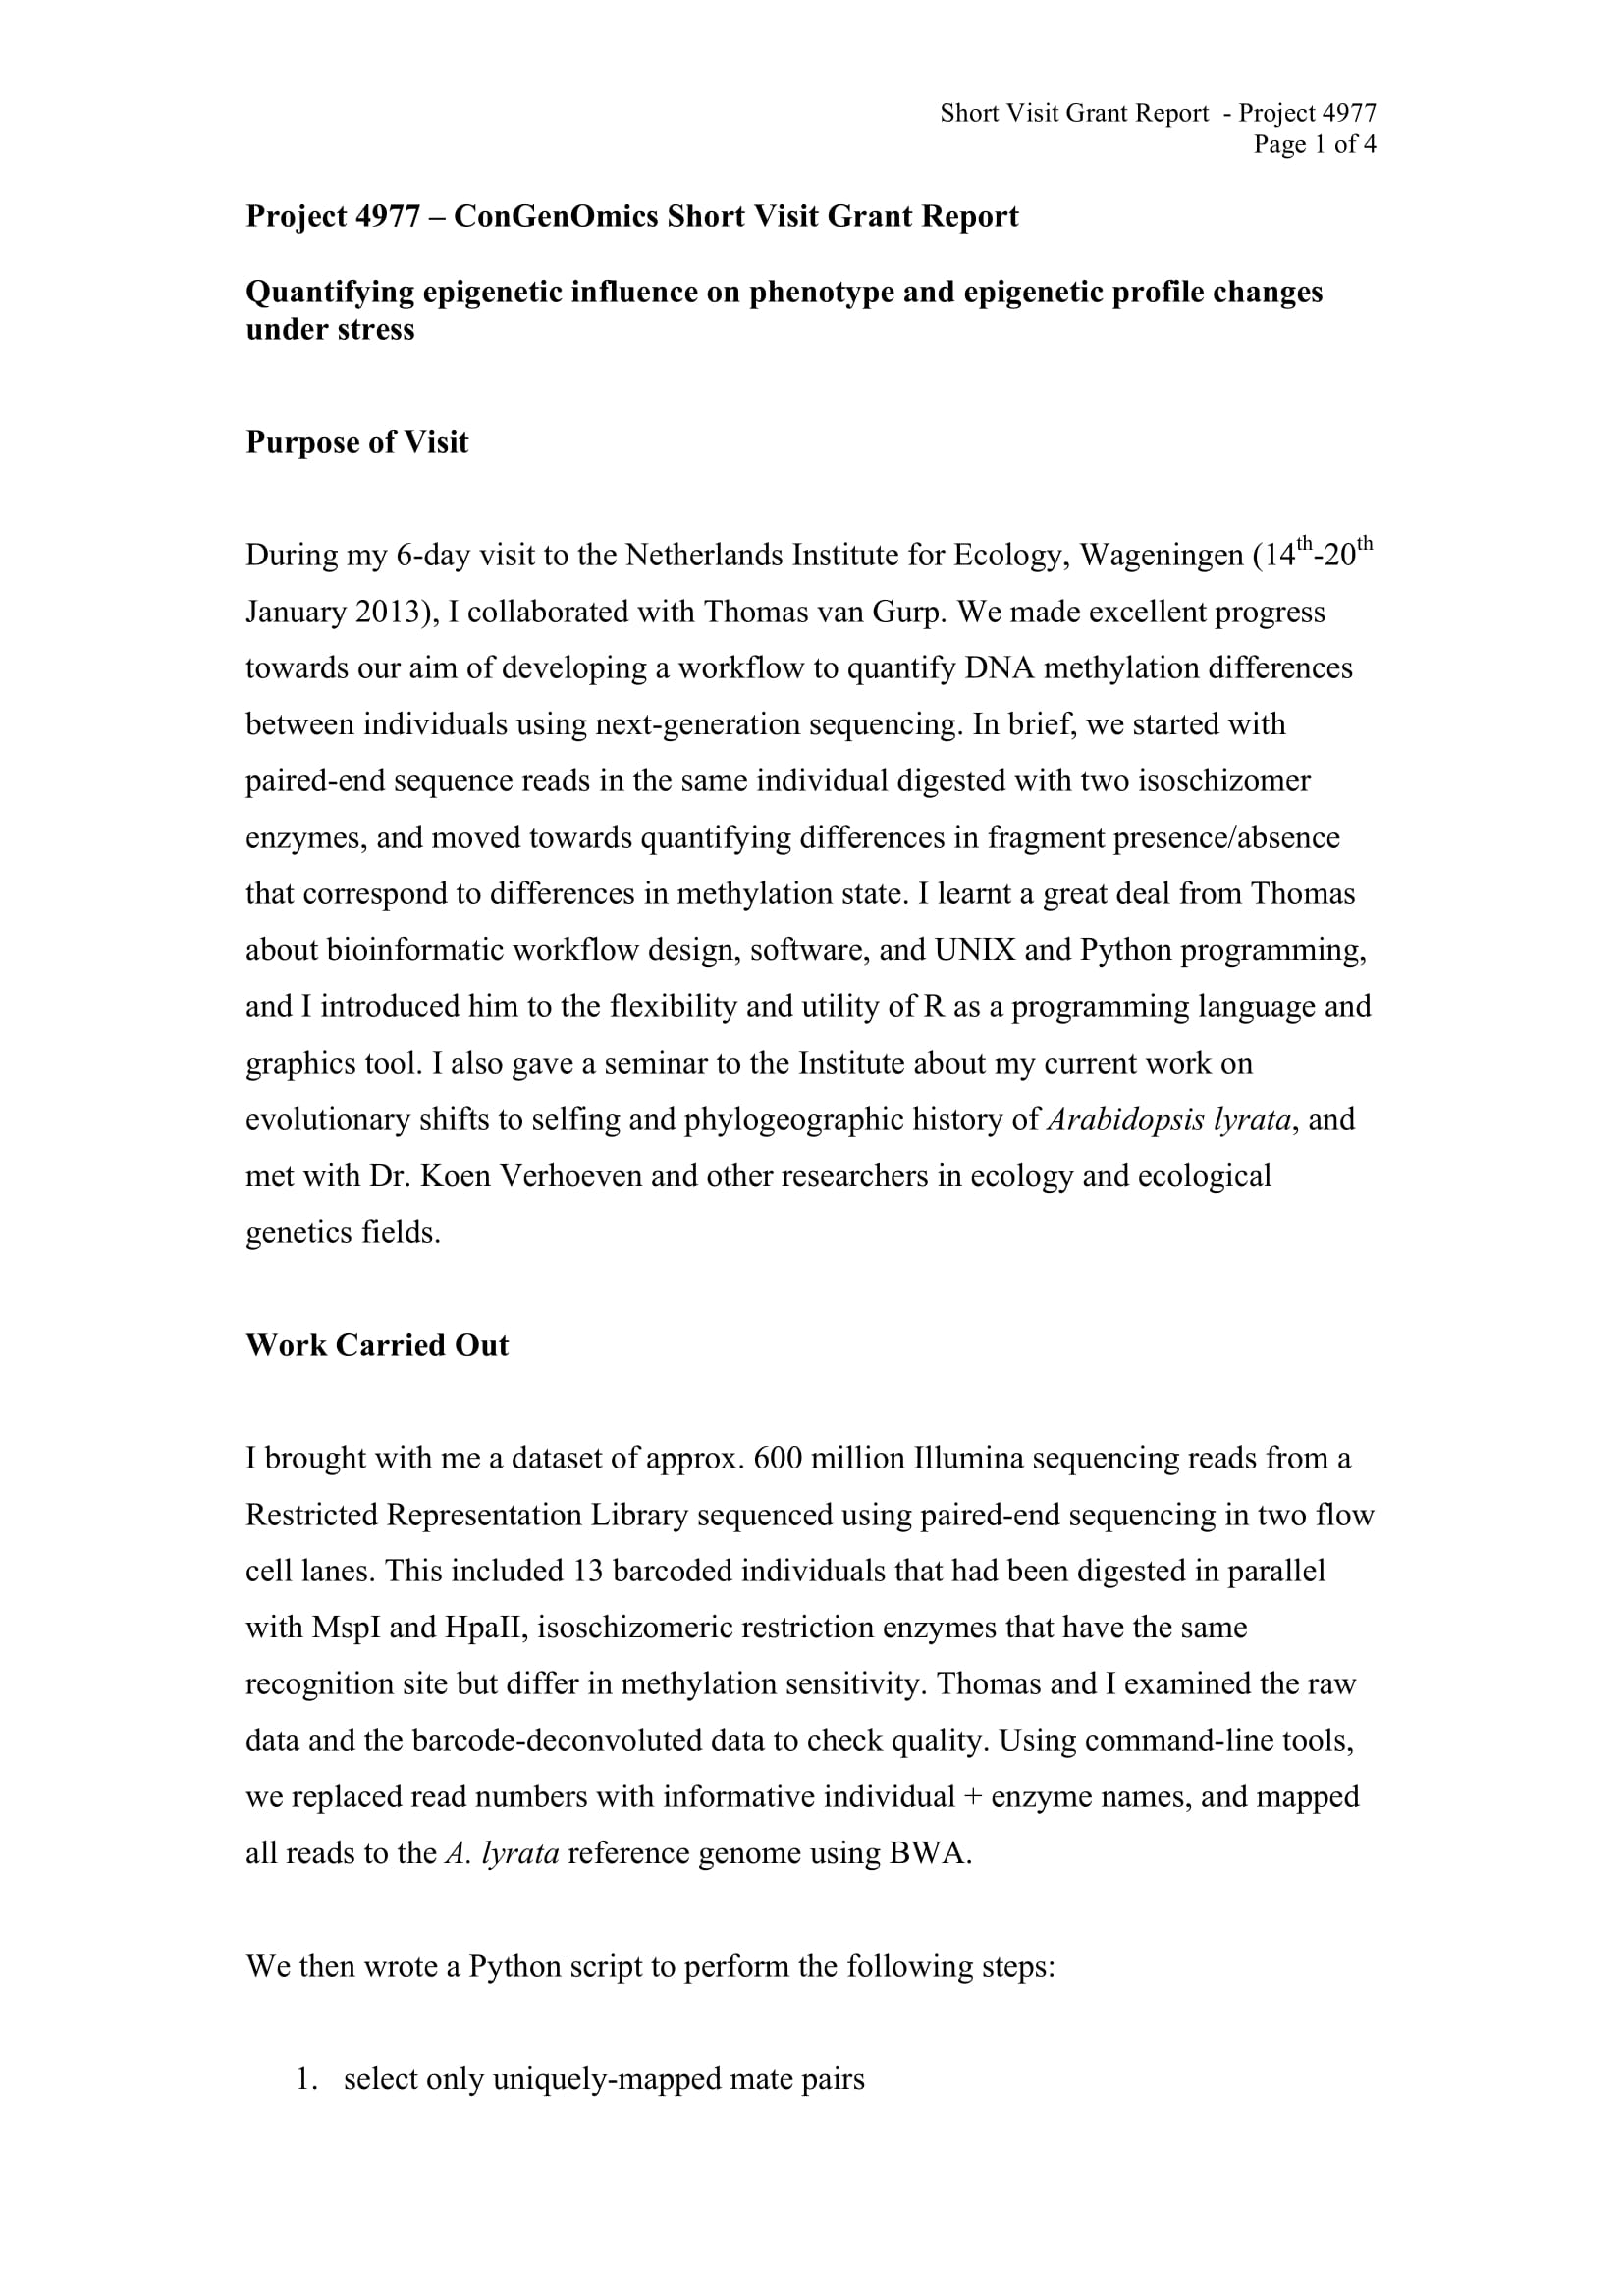 writing report sample pdf